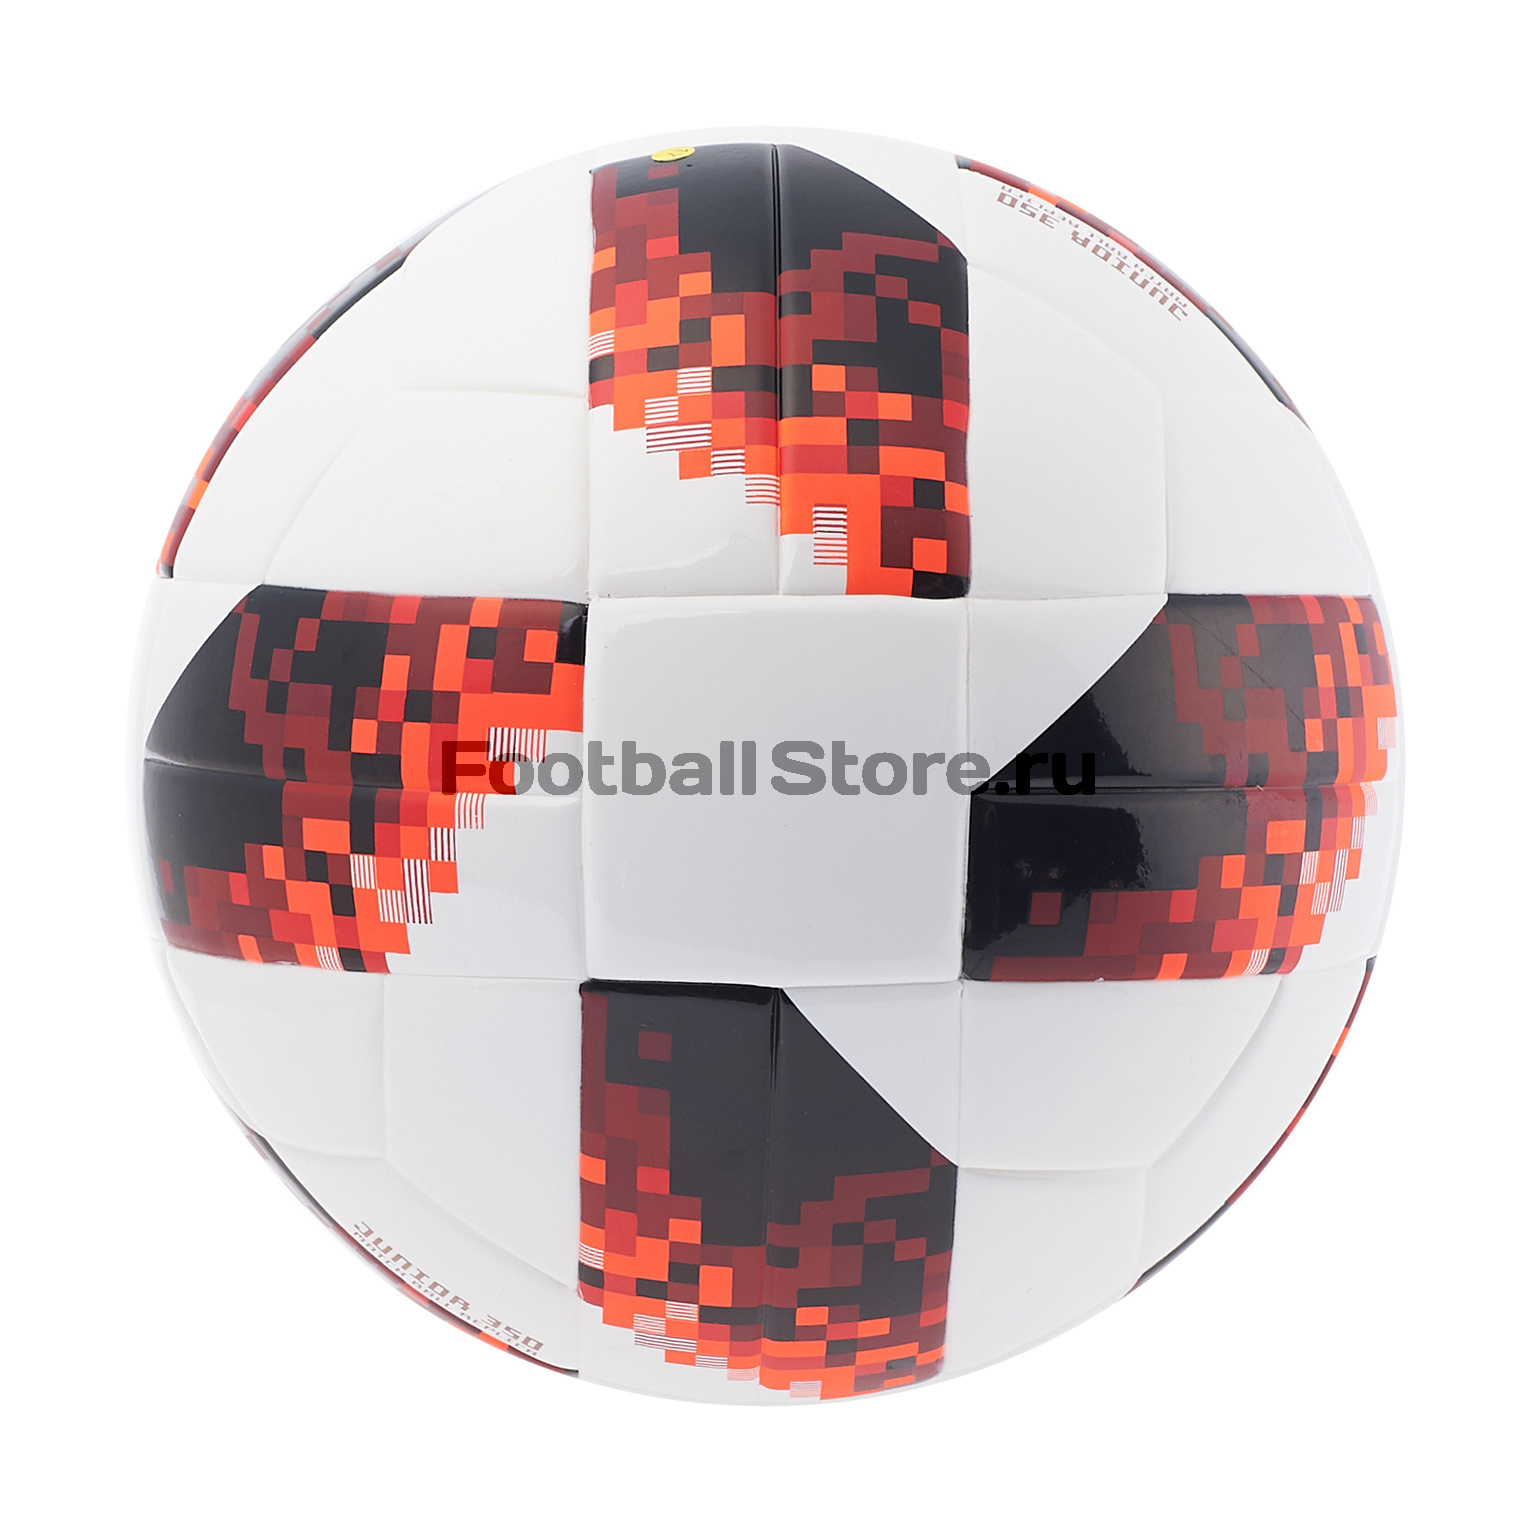 Футбольный мяч Adidas Telstar Мечта ЧМ-2018 J350 CW4694